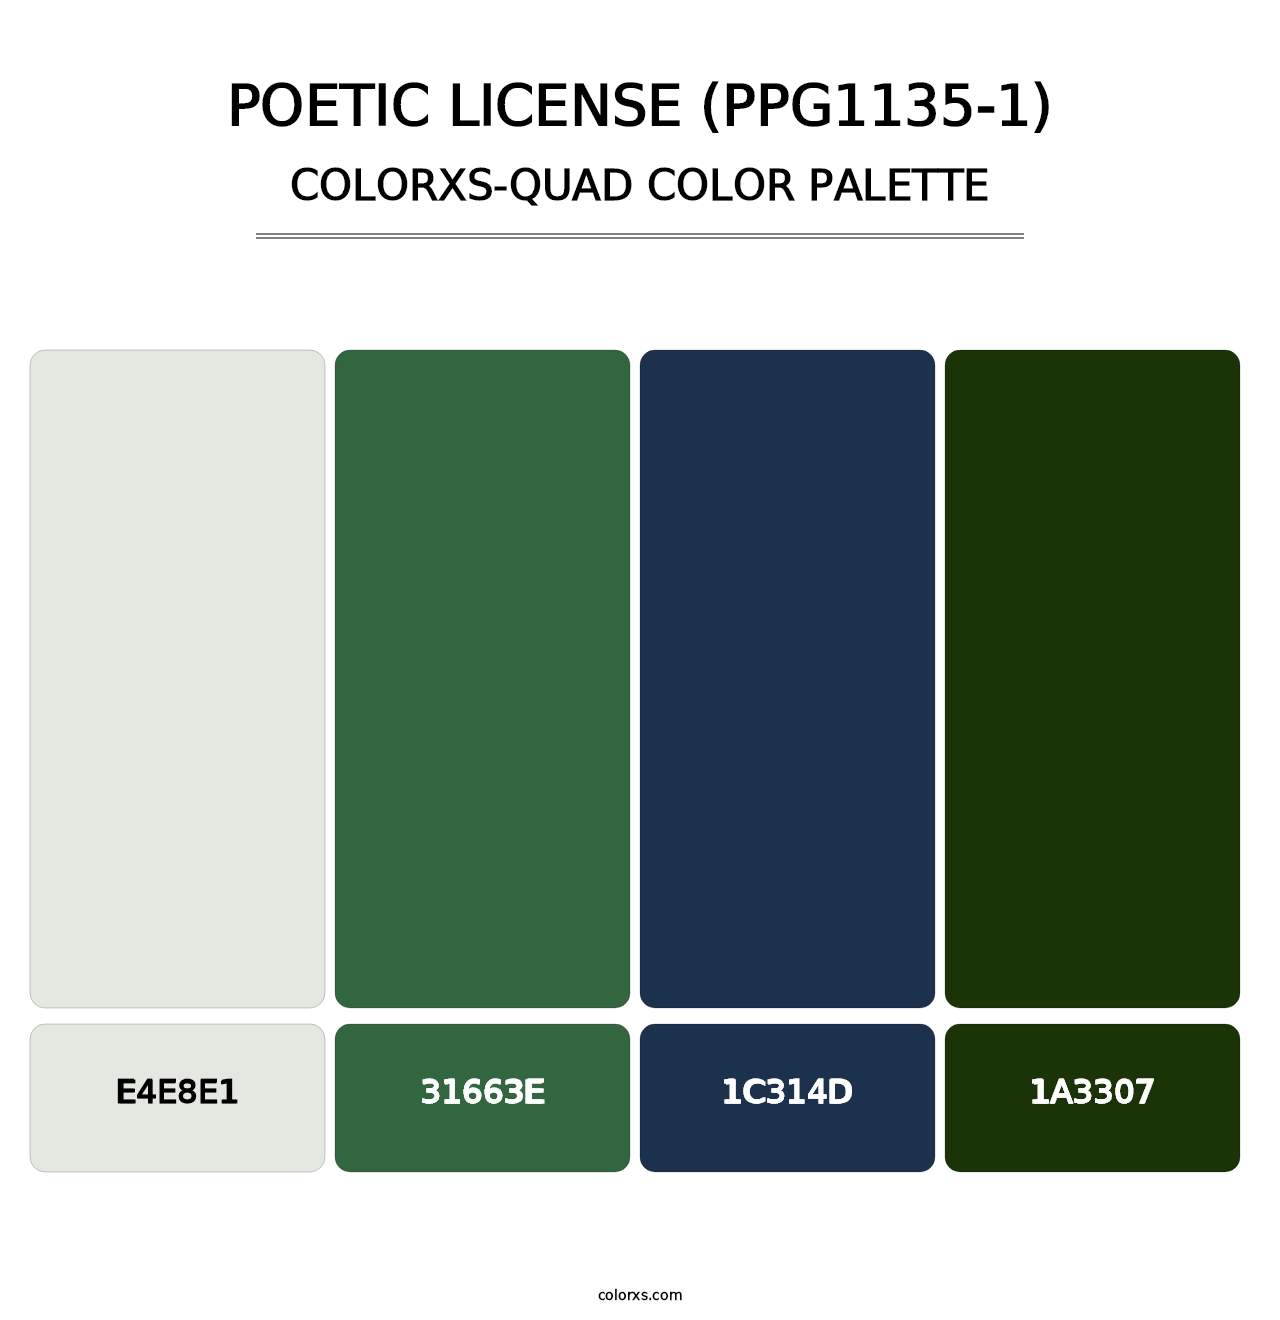 Poetic License (PPG1135-1) - Colorxs Quad Palette